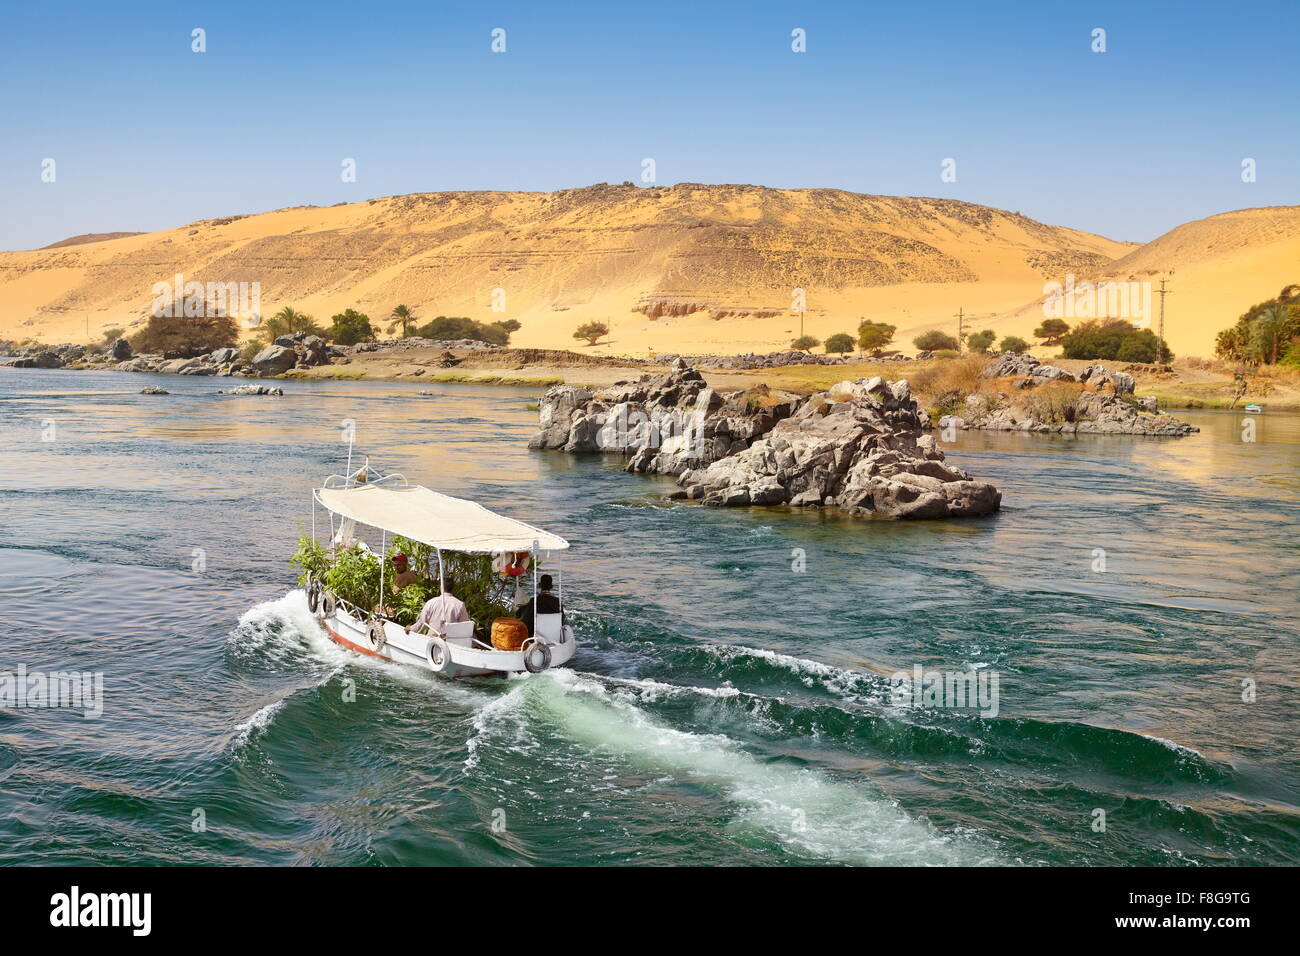 Egypte - Croisière sur le Nil, petit bateau de croisière naviguant à Assouan, zone protégée de la première cataracte du Nil Banque D'Images